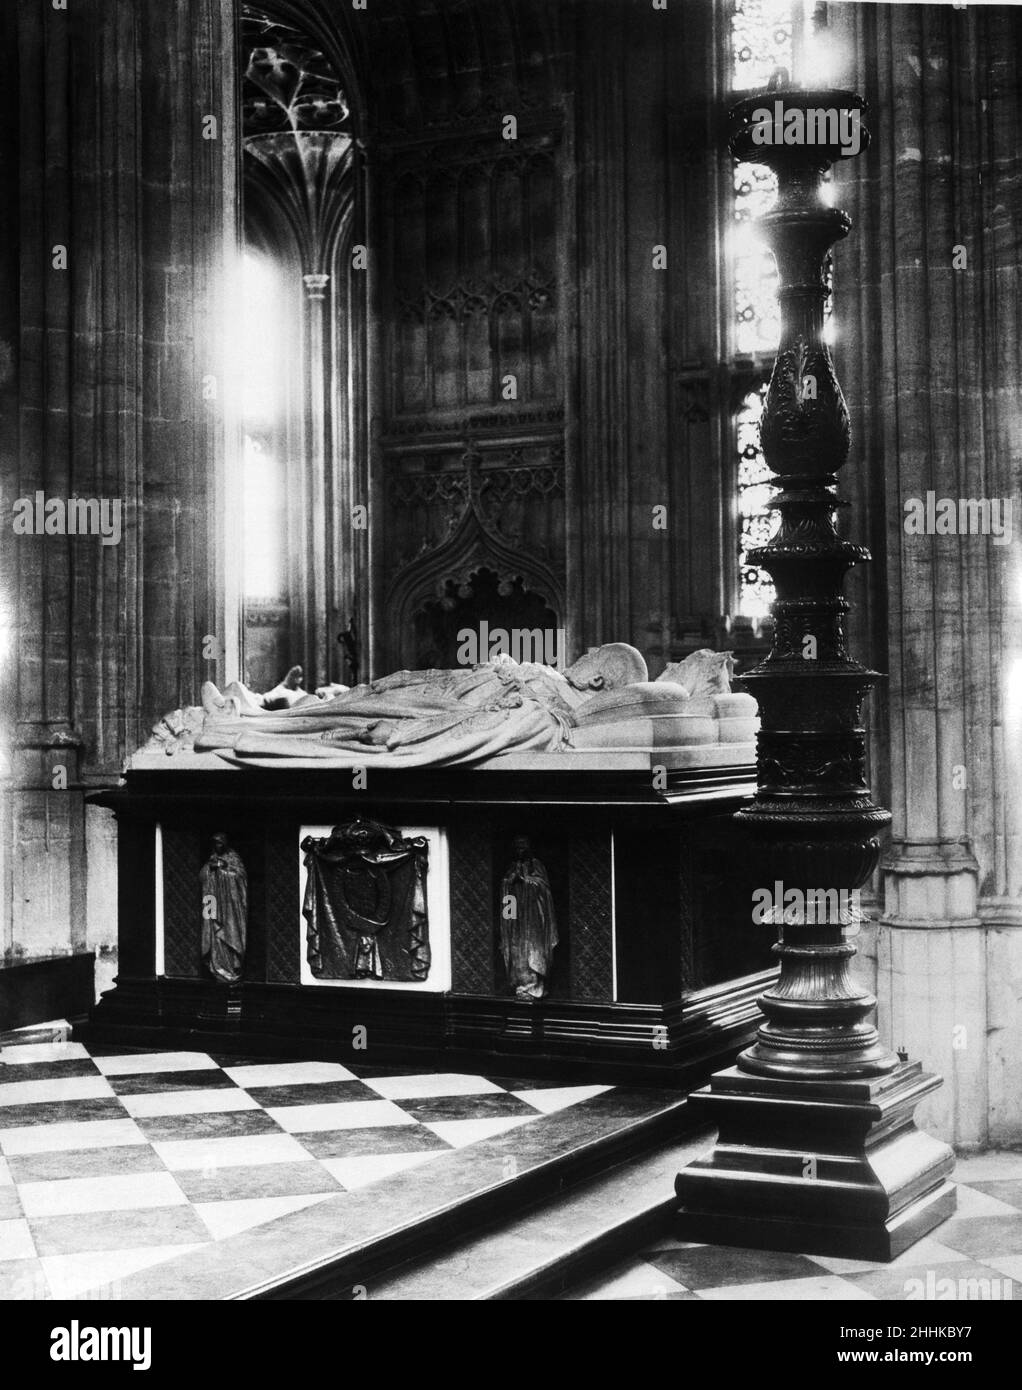 Die Restaurierung der St. George's Chapel, Windsor Castle. Das Grab von König Edward VII. Und Königin Alexandra in der Garter Chapel of St. George's. Bild veröffentlicht im Daily Mirror am 3rd. November 1930. Stockfoto